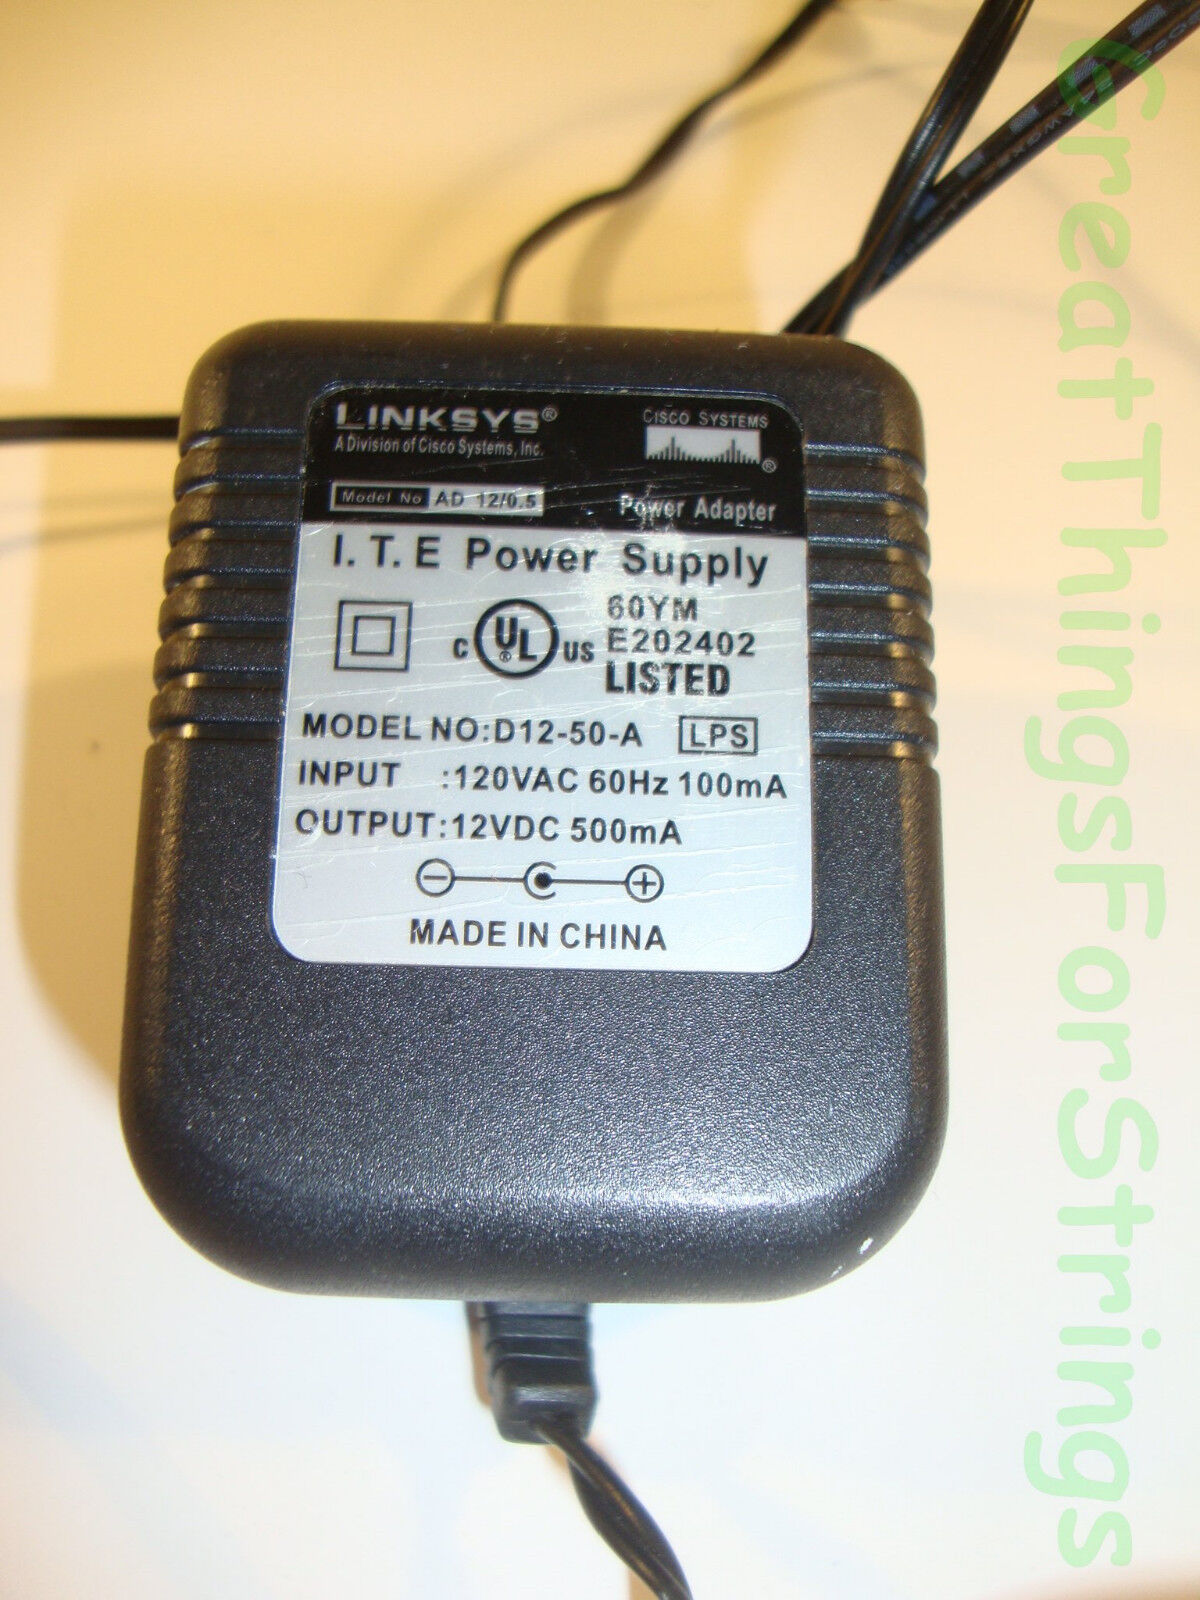 Genuine Linksys Cisco Systems Power Adapter I.T.E D12-50-A 12VDC 500mA Black